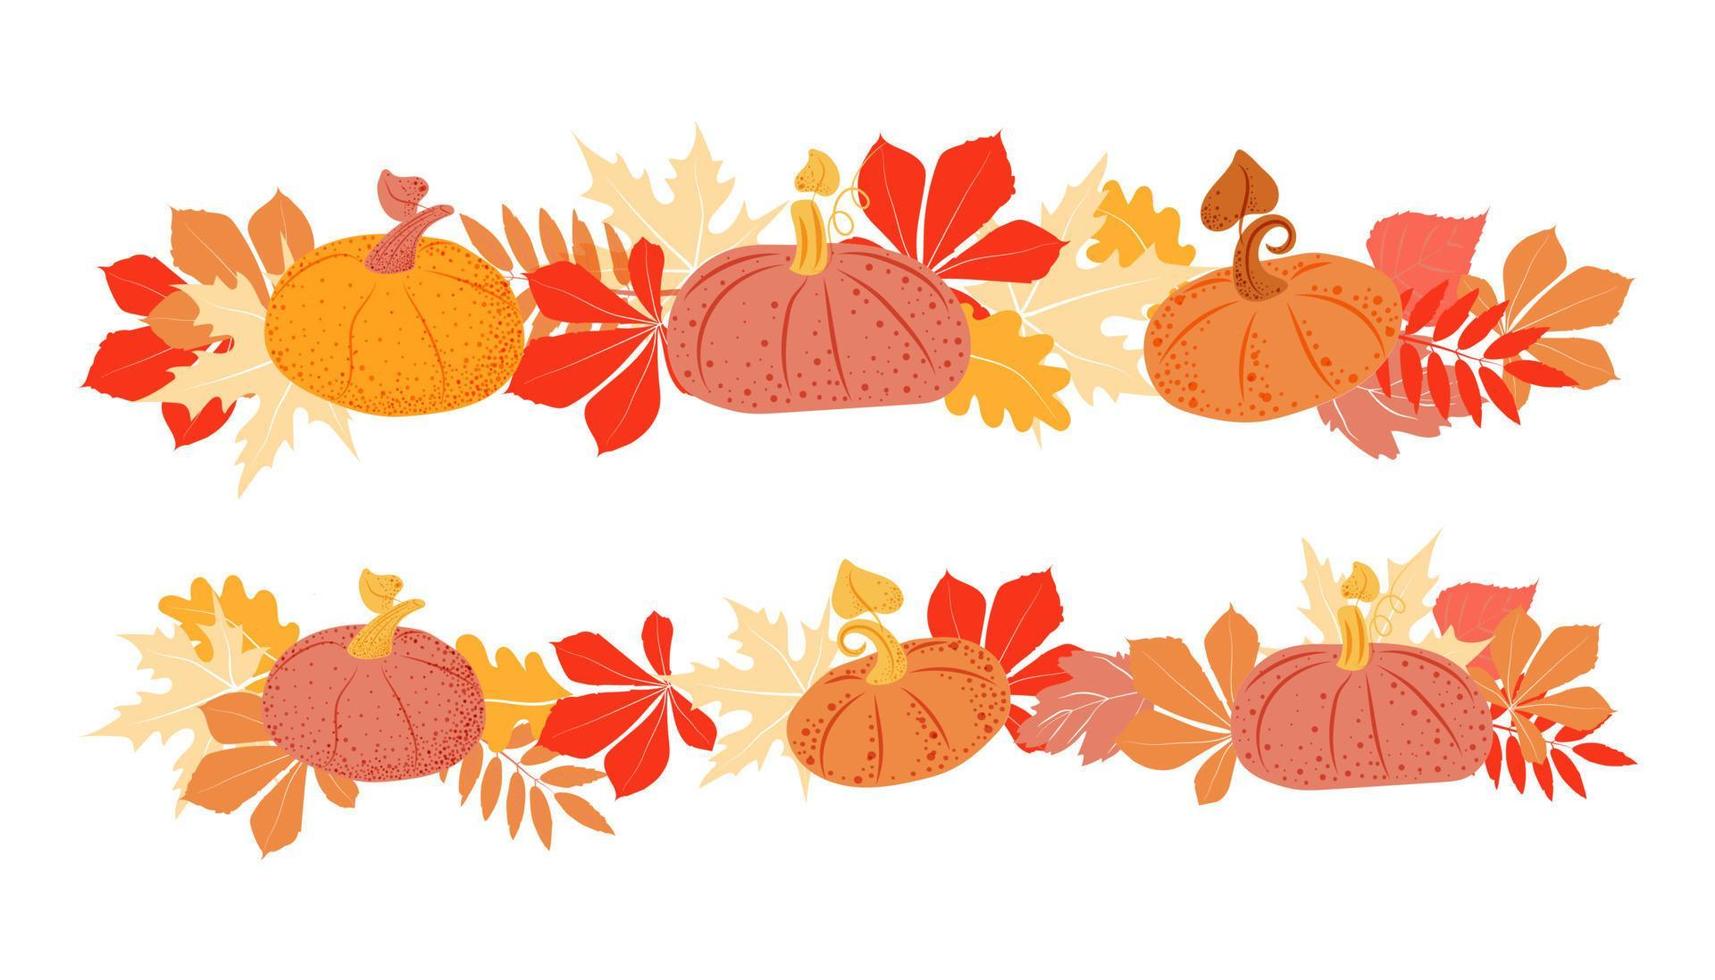 bordure dessinée à la main de citrouilles et de feuilles d'automne. l'automne. feuilles des arbres. élément de décor végétal. illustration vectorielle simple vecteur